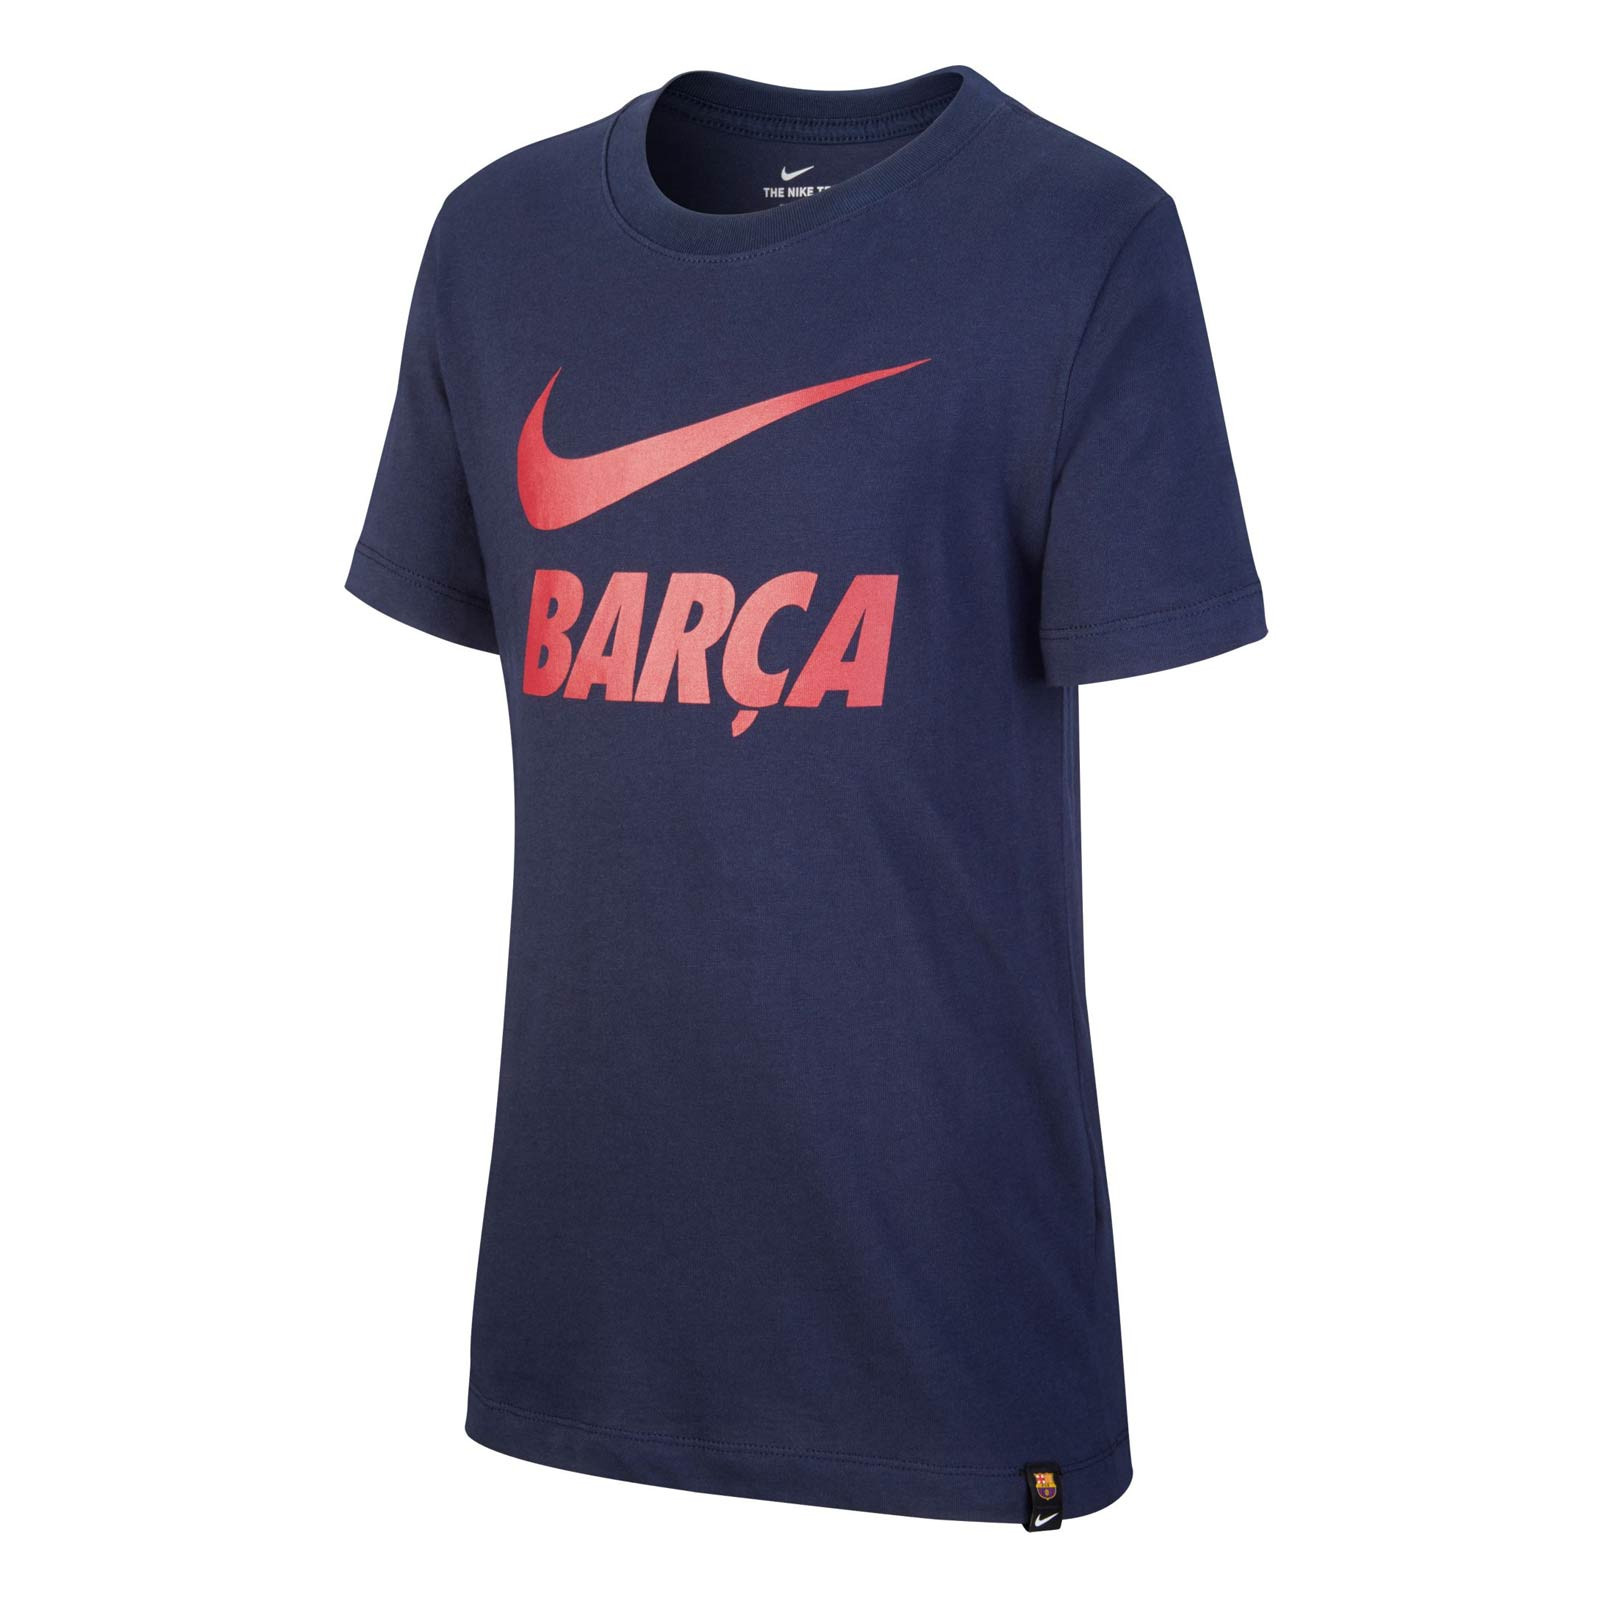 Fc Barcelone Camiseta de algodón Barca Colección Oficial Talla niño 